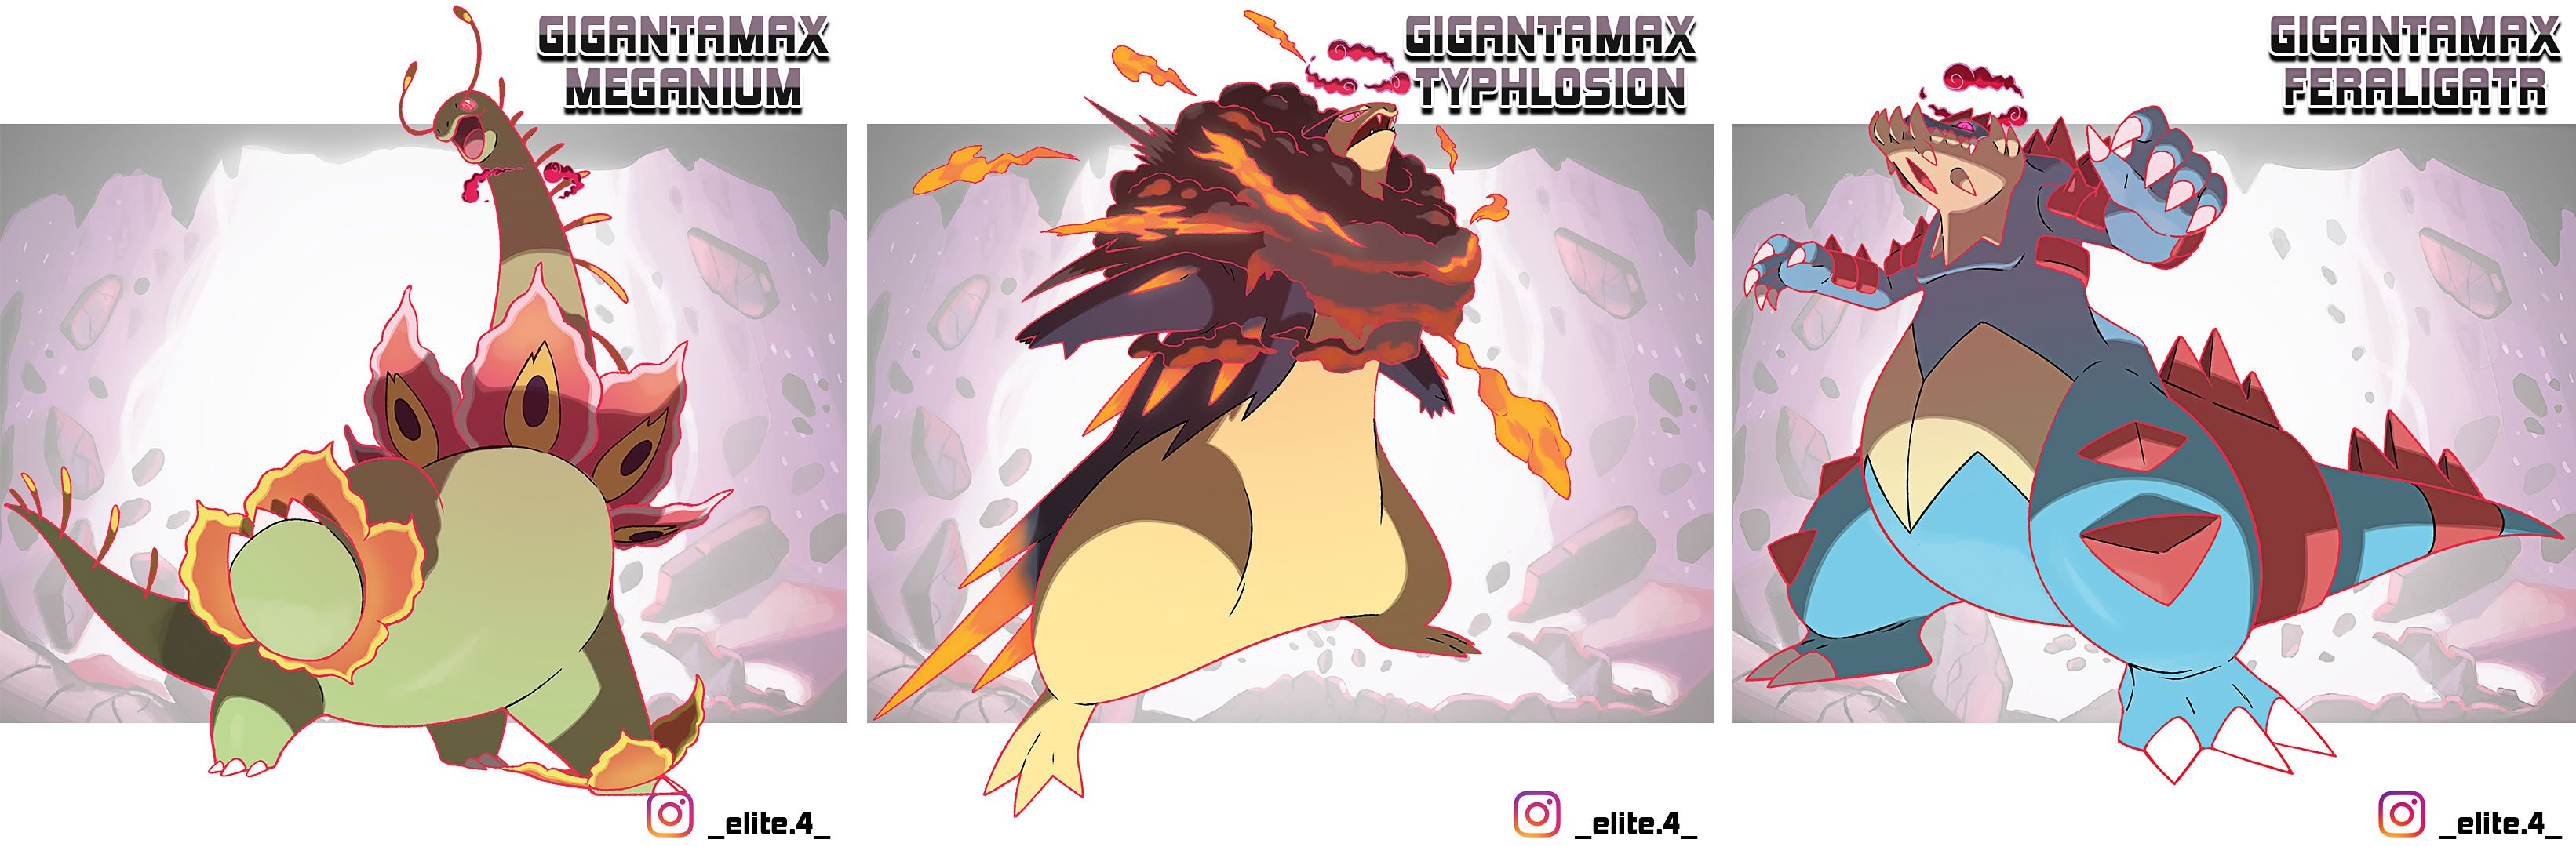 Fan Made Gigantamax Pokemon